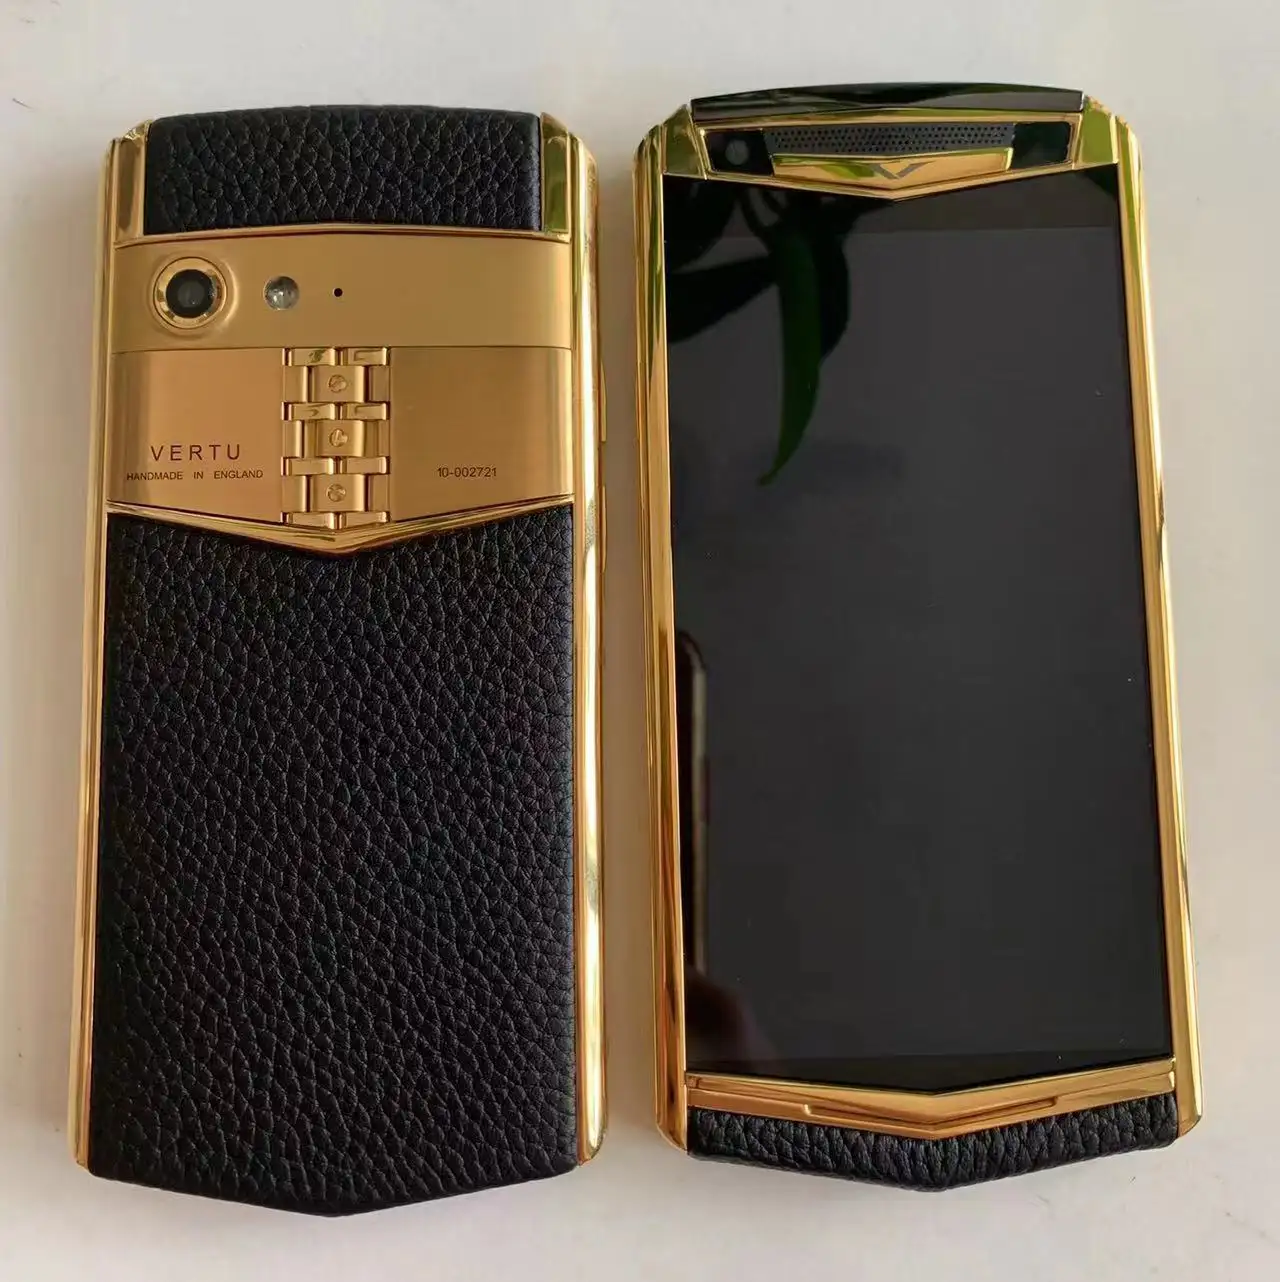 Nouveau débloqué haut de gamme luxe or téléphone intelligent vertue aster p téléphone portable téléphone portable avec étui en cuir en stock